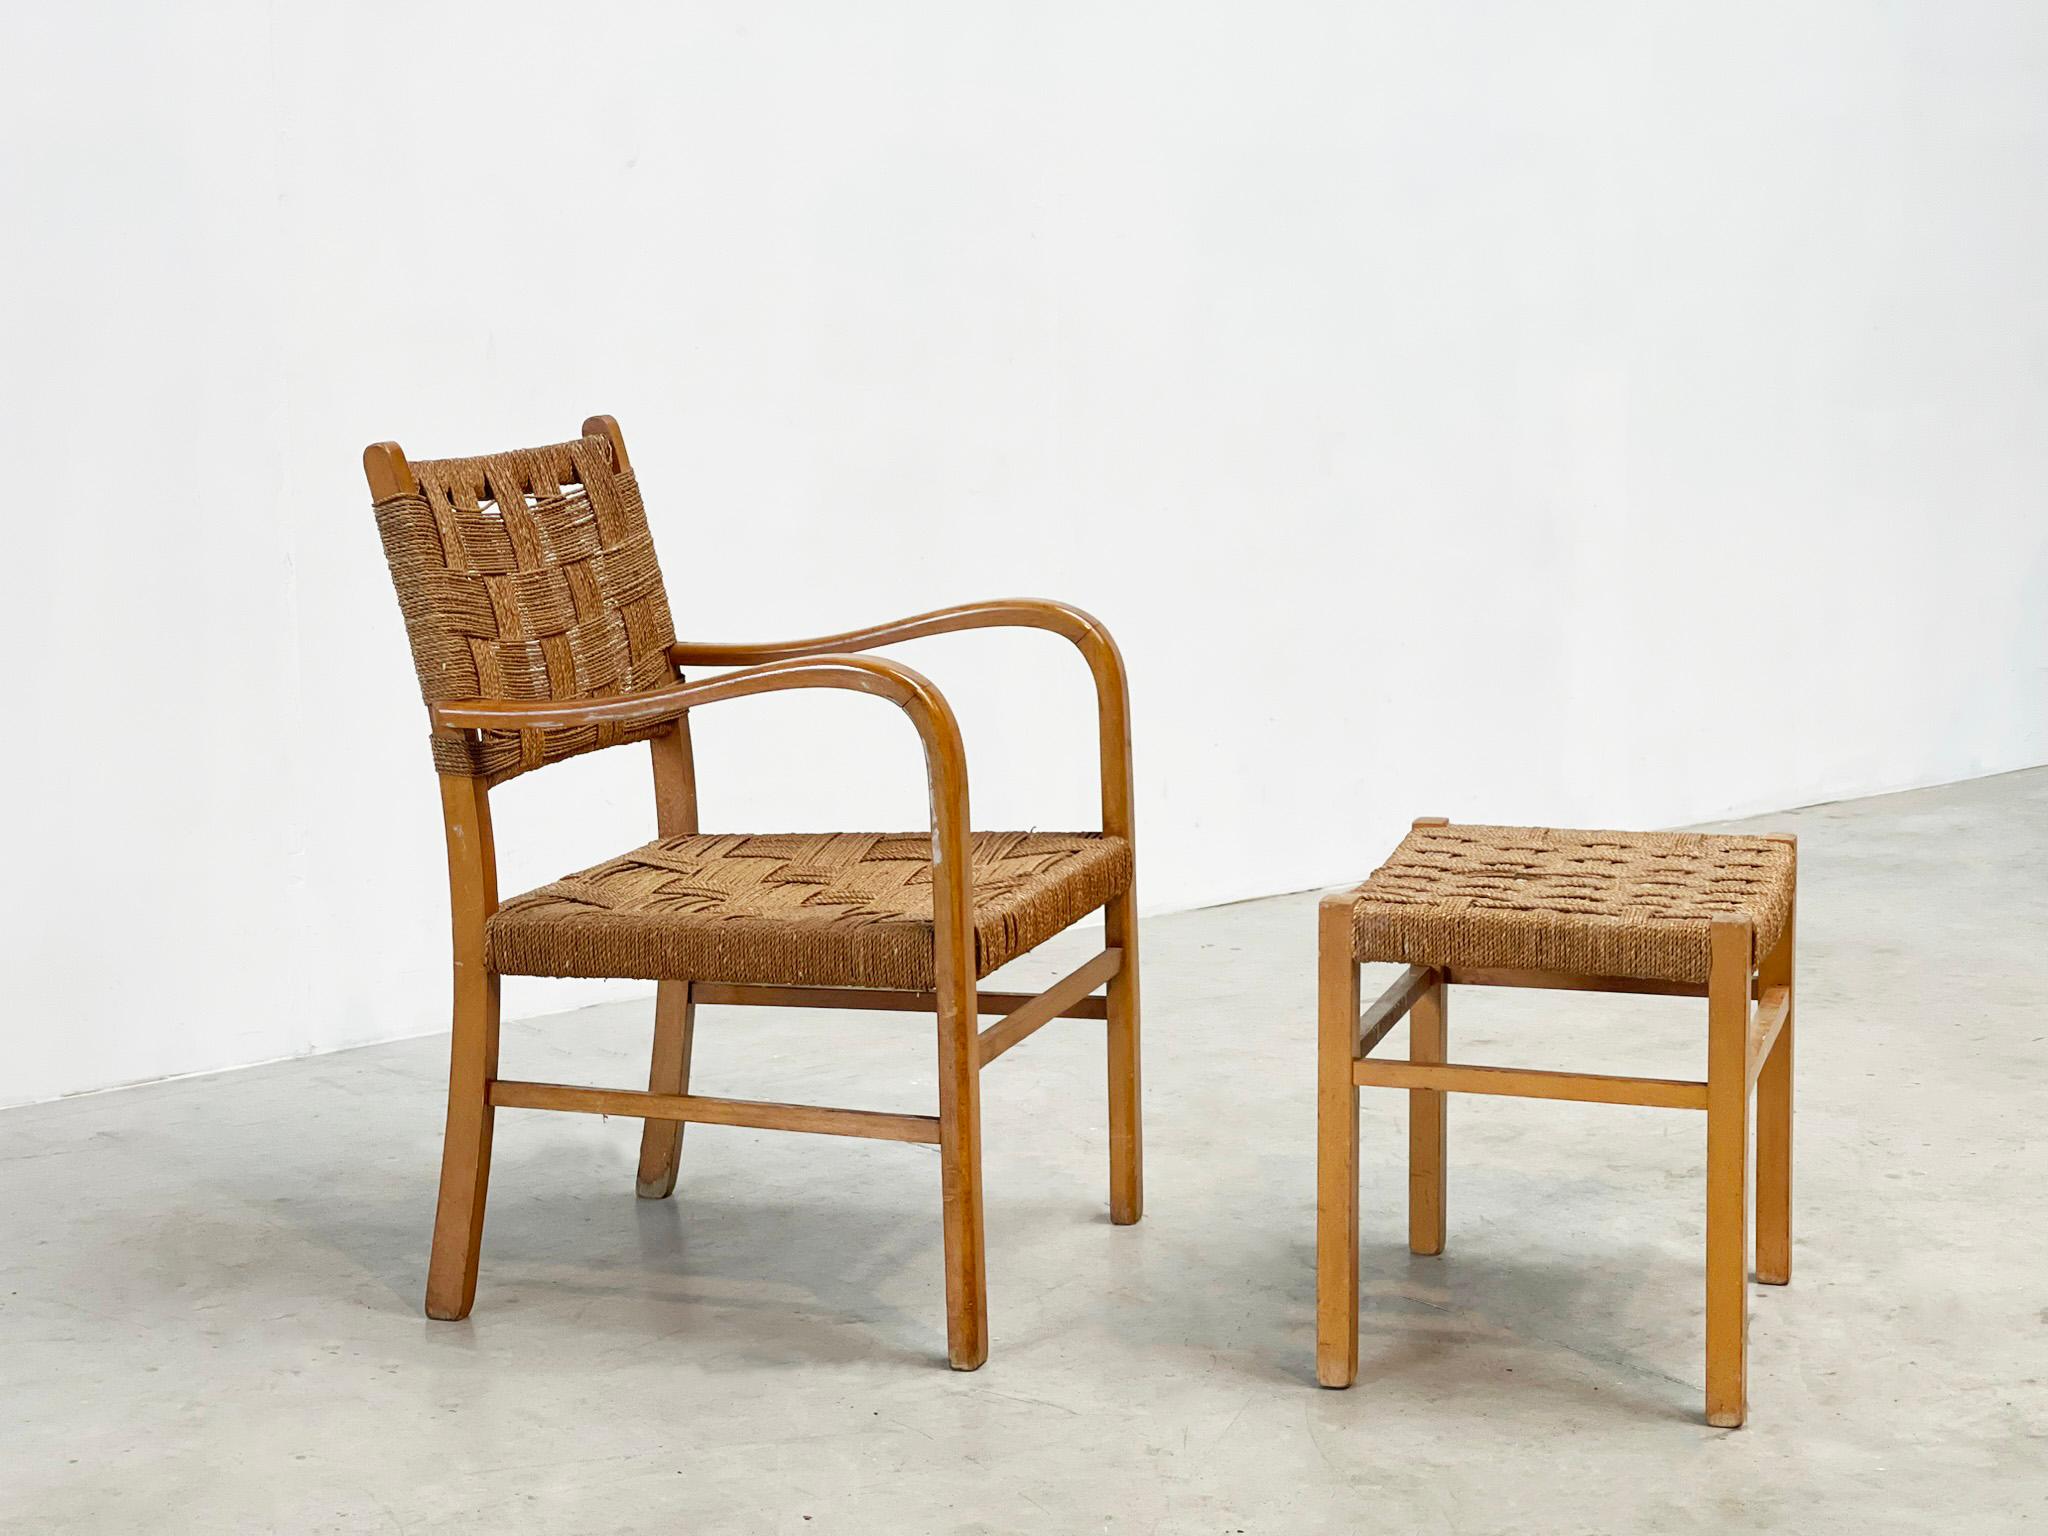 Rattan-Sessel und Ottomane
Sehr schöne Lounge oder Sessel. Dieser Stuhl wurde in den 1930er Jahren in Deutschland hergestellt. Dieser Stuhl wurde von einem unbekannten Designer entworfen, aber offensichtlich von jemandem mit Fachwissen. Er hat eine